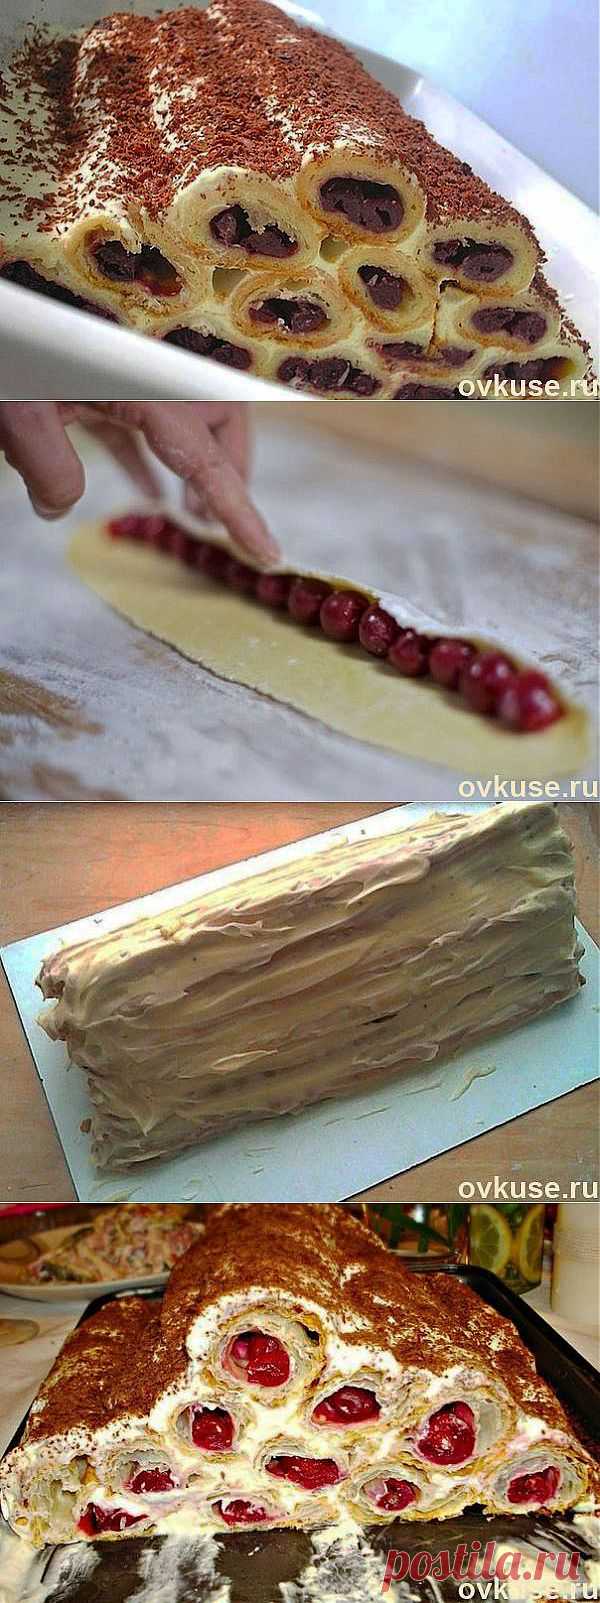 Торт "монастырская изба" - Простые рецепты Овкусе.ру